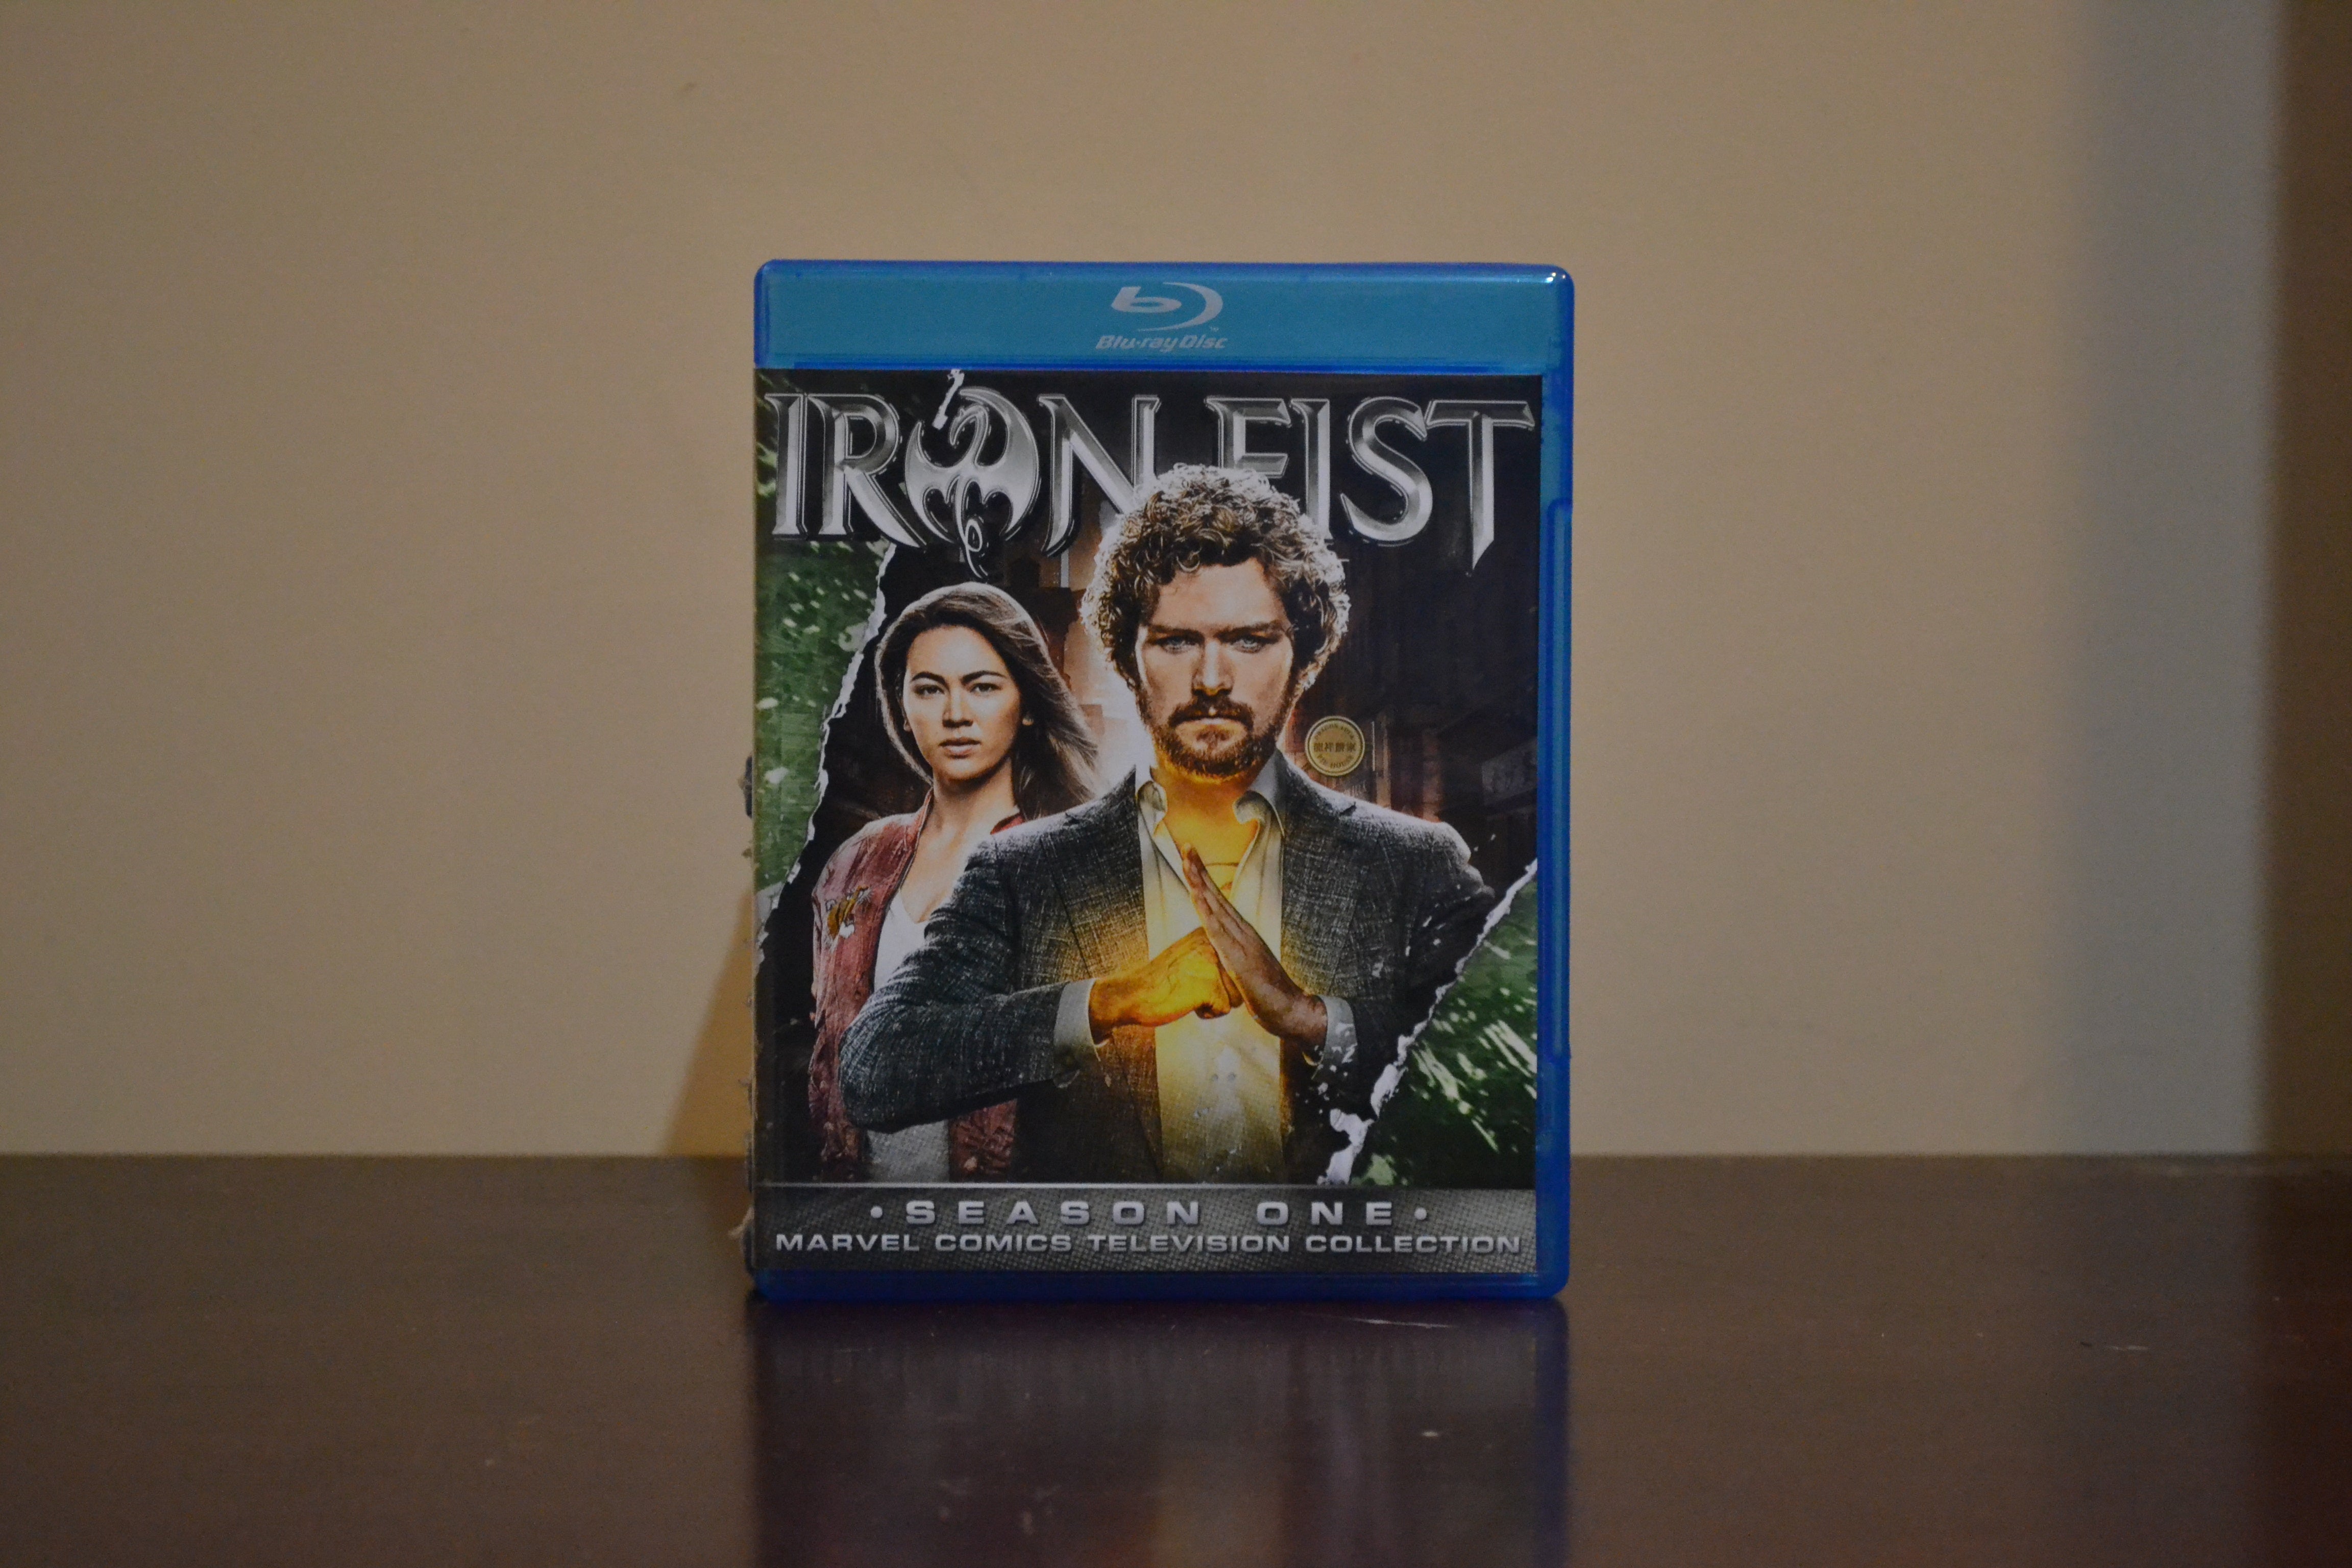 Iron Fist Season 1 Blu-ray Set